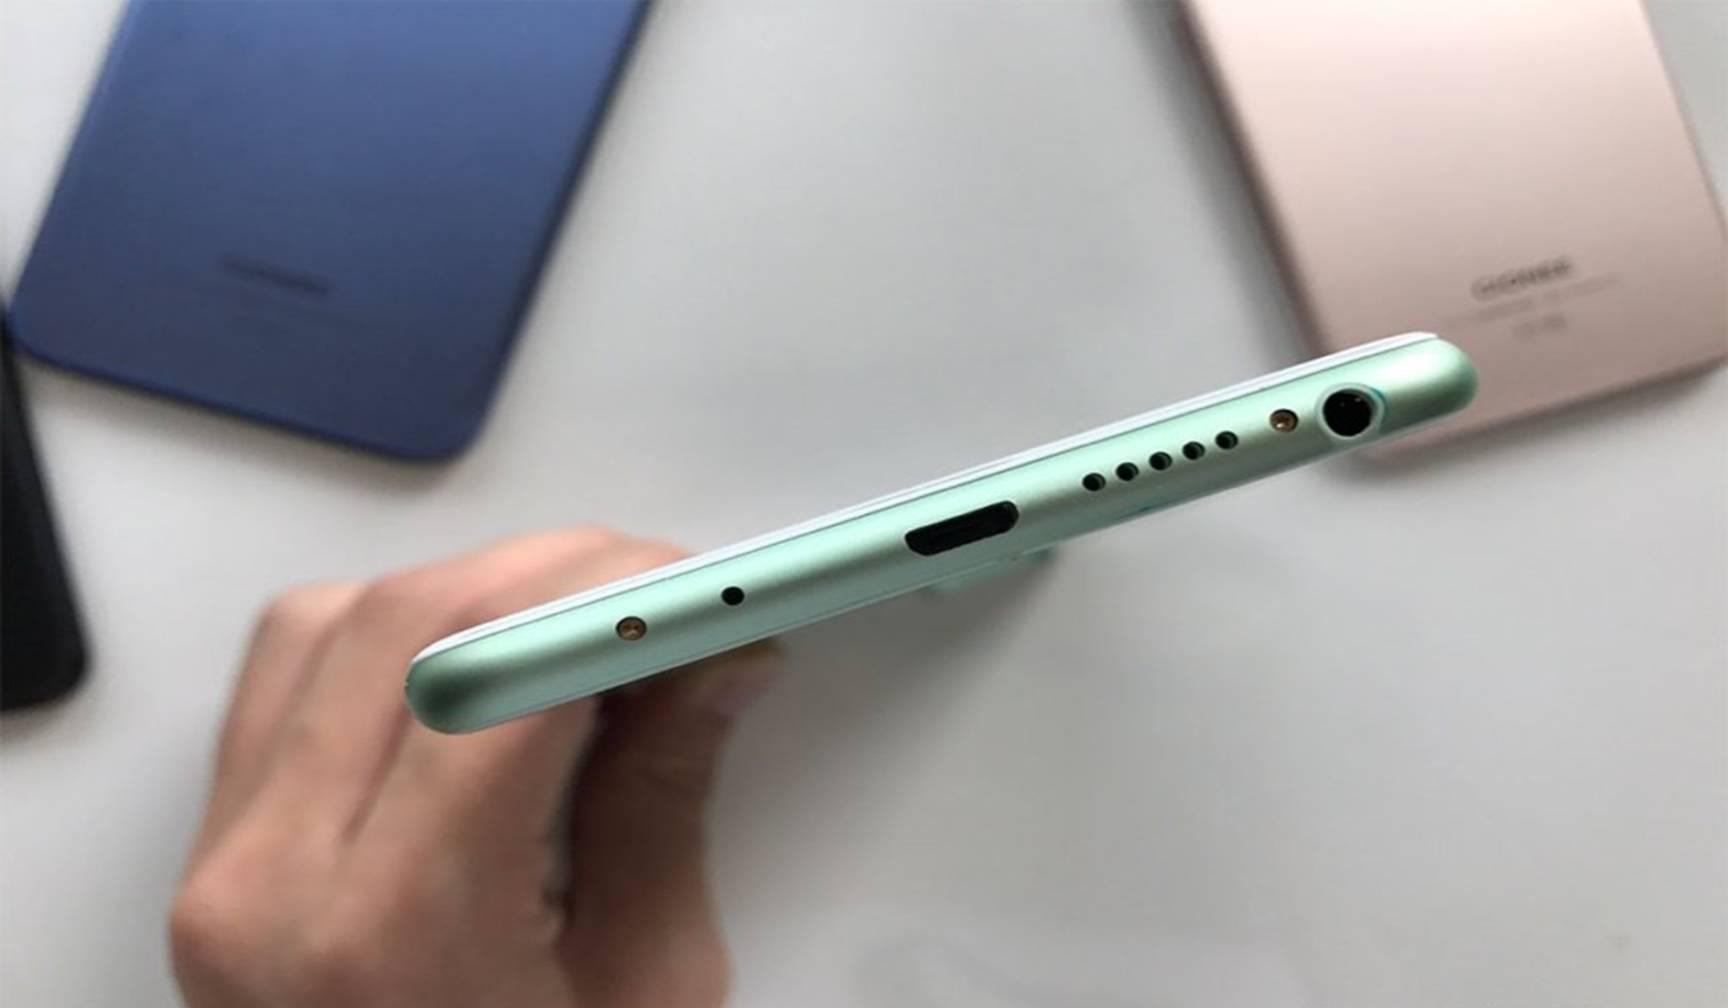 Gionee S10 स्मार्टफोन की फोटो online leak